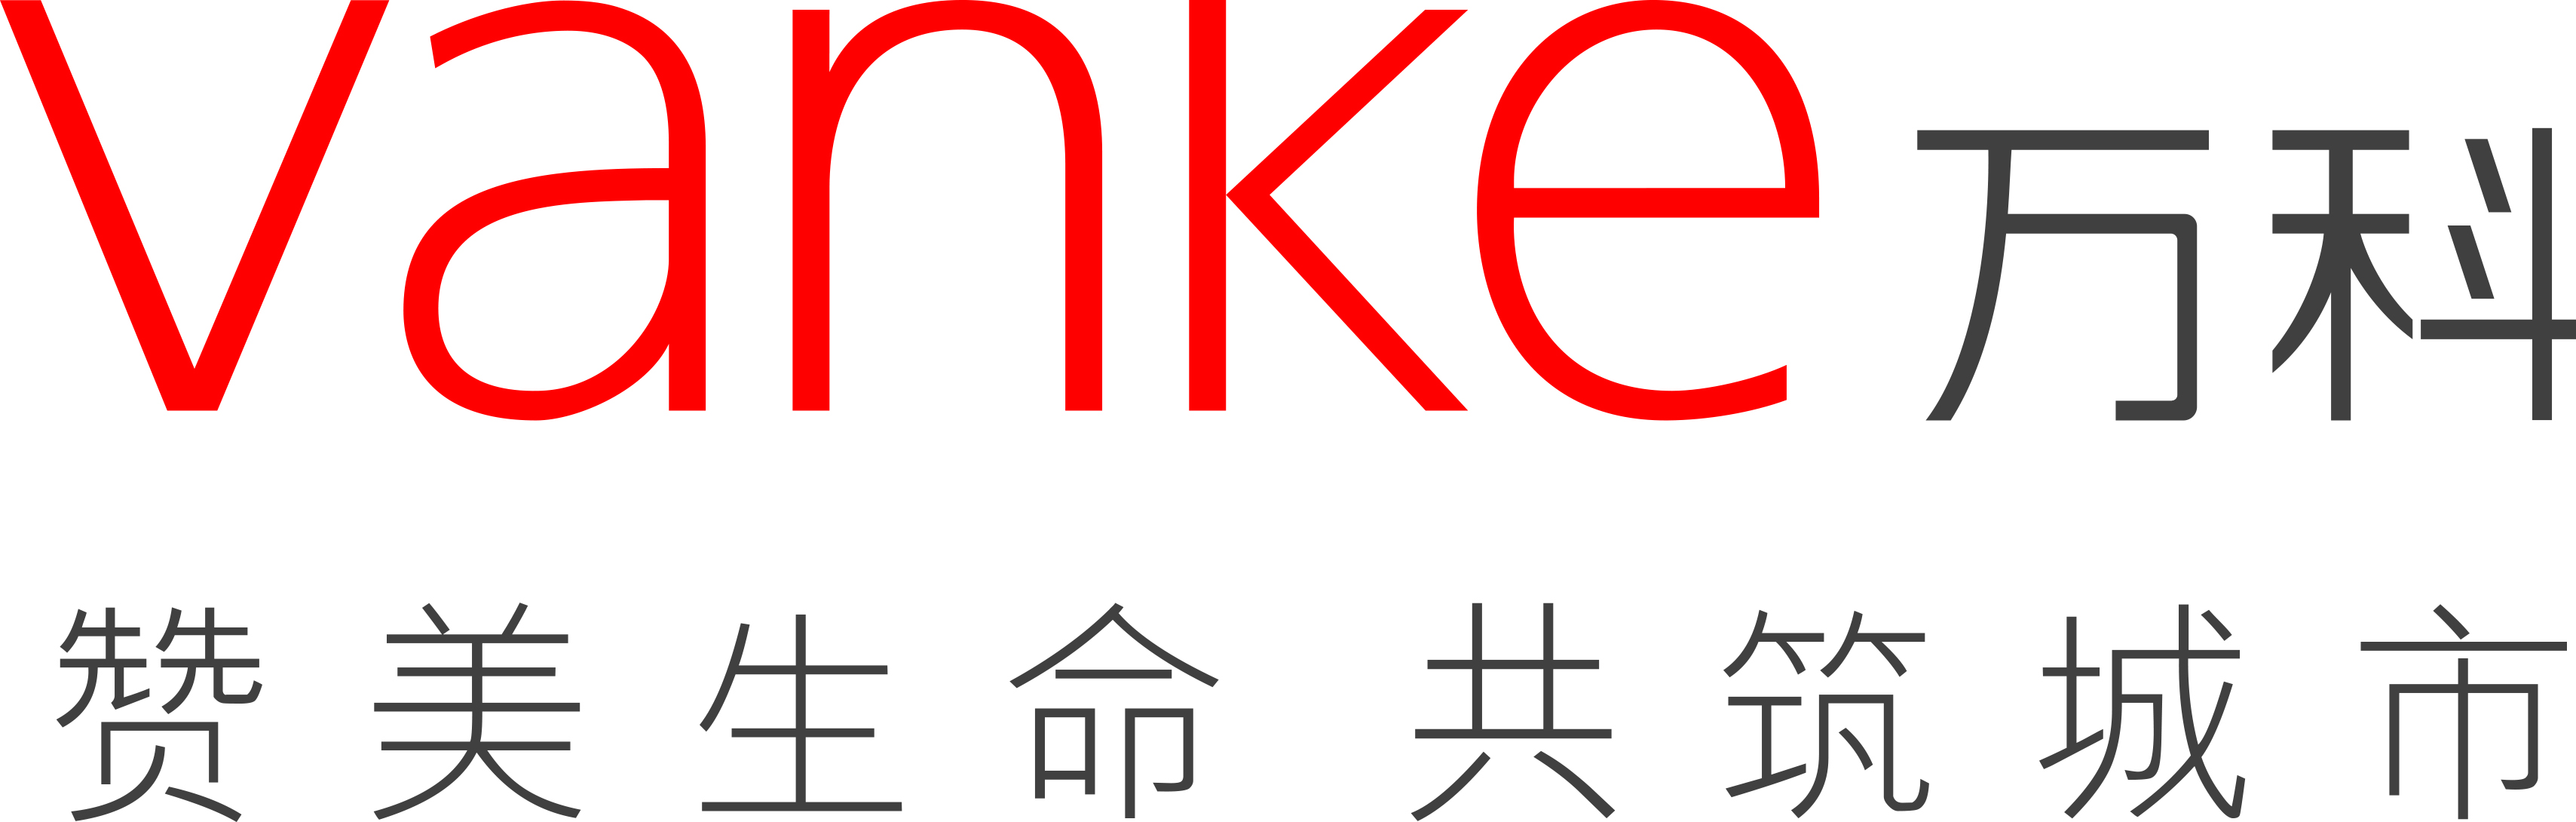 Vanke Brand Logo